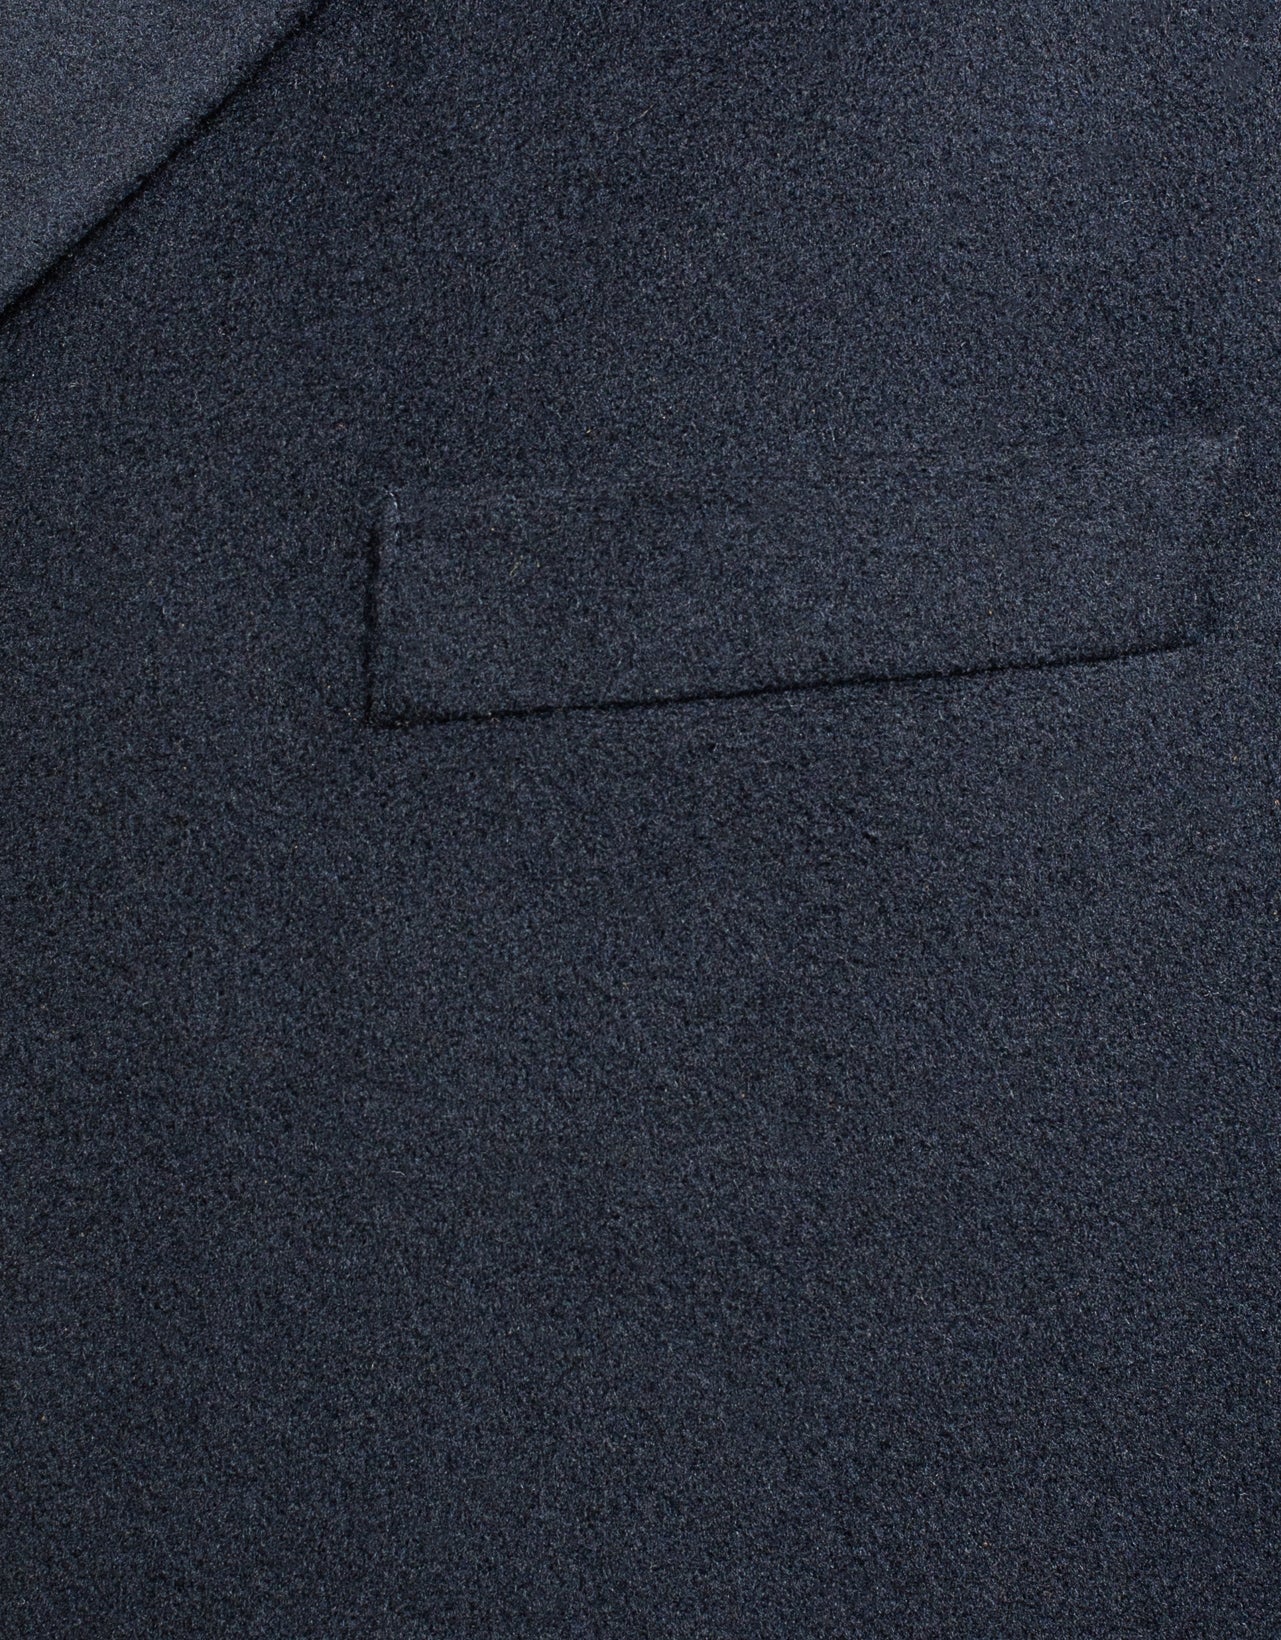 Navy Wool Top Coat | Men's Sportcoats & Dress Clothes - J. Press